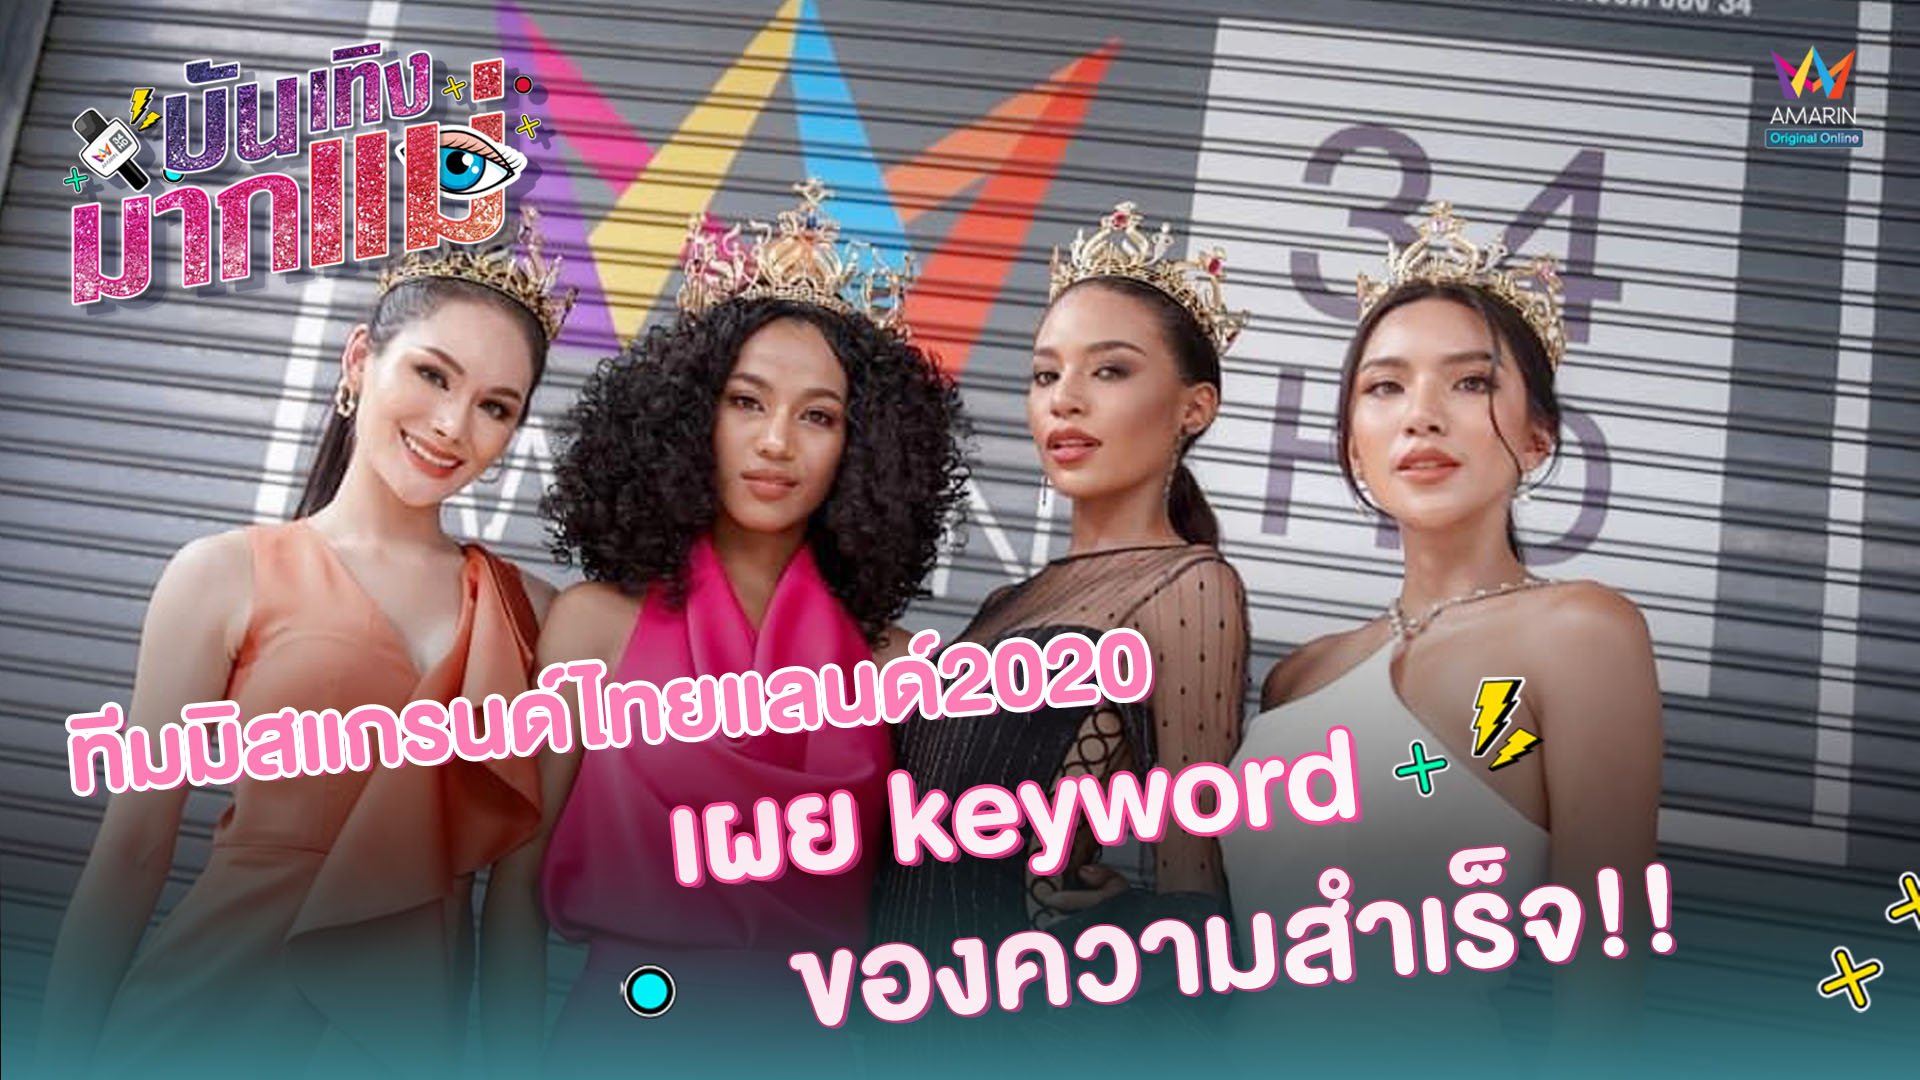 บันเทิงมากแม่ | EP.16 ทีมมิสแกรนด์ไทยแลนด์ 2020 เผย keyword ของความสำเร็จ!! | 25 ก.ย. 63 | AMARIN TVHD34